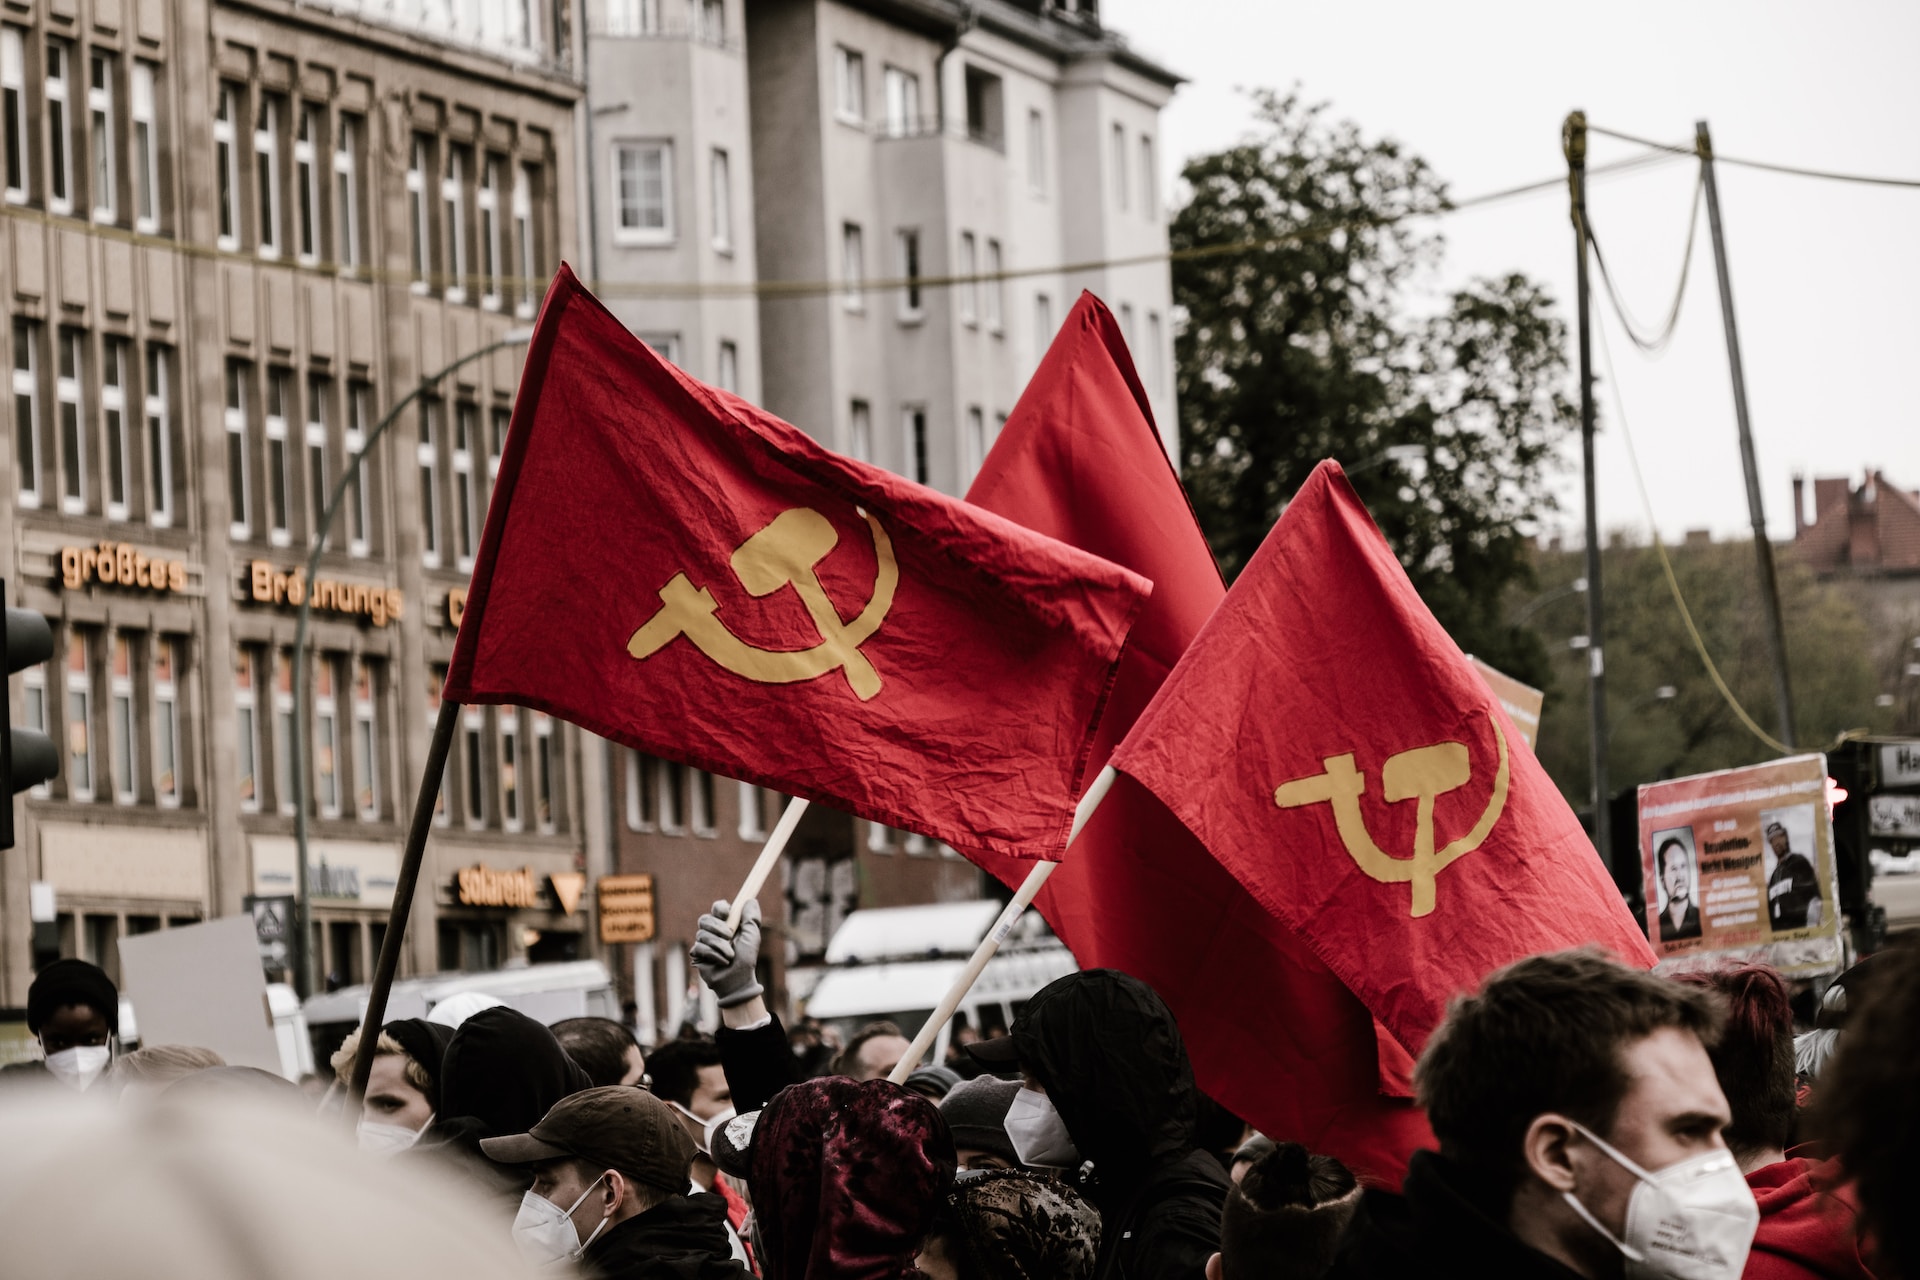 Difrencia entre socialismo y comunismo, bandera comunista.